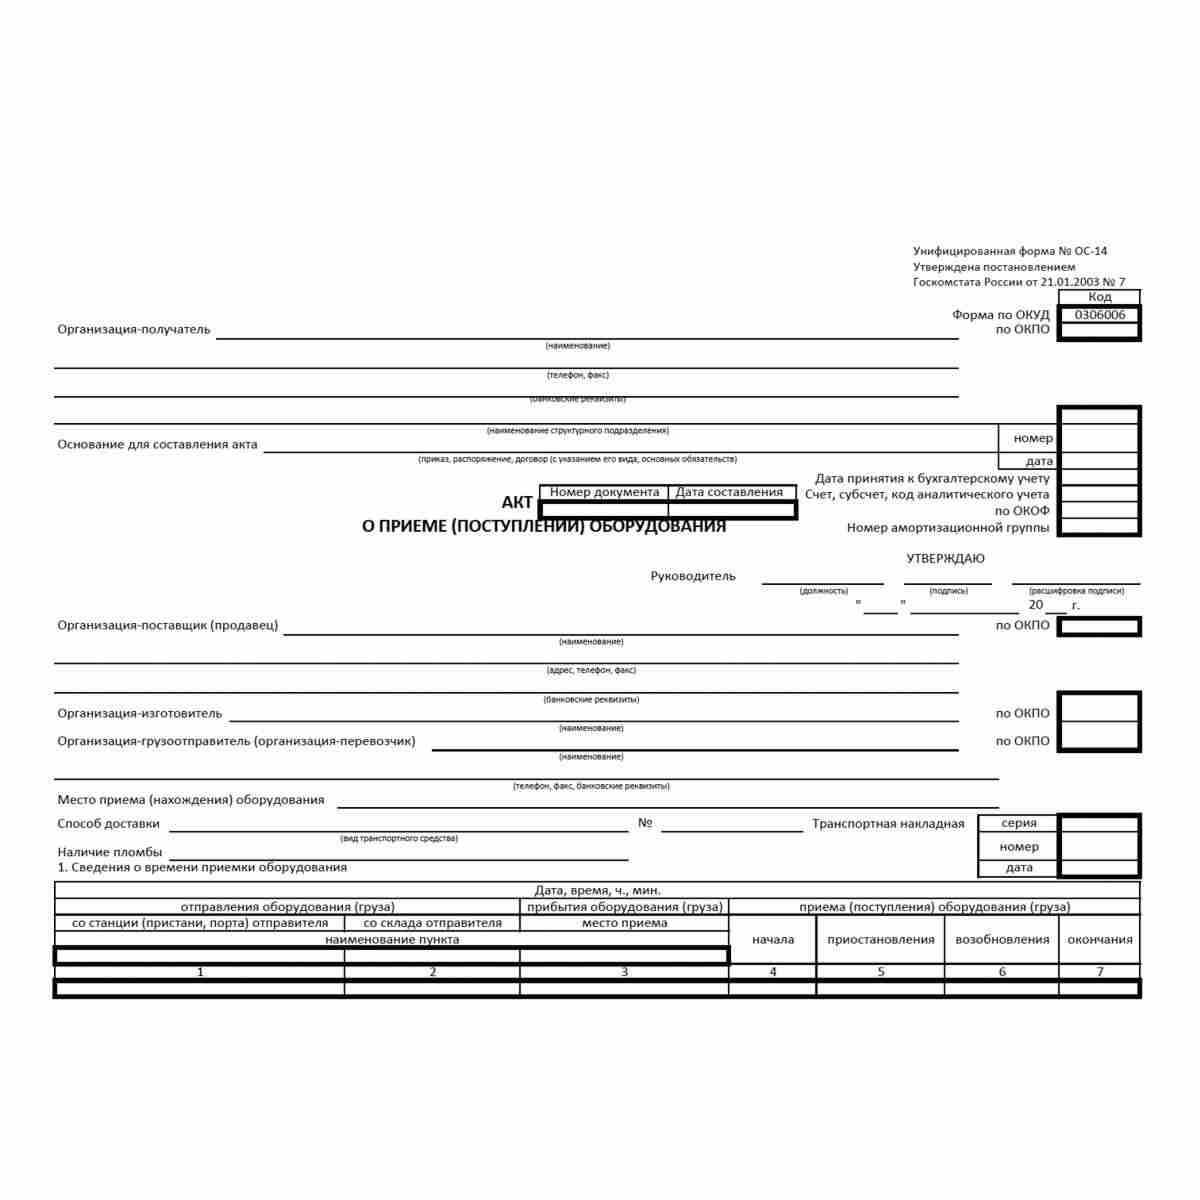 Унифицированная форма первичной учетной документации № ОС-14 "Акт о приеме (поступлении) оборудования" (ОКУД 0306006). Лицевая сторона